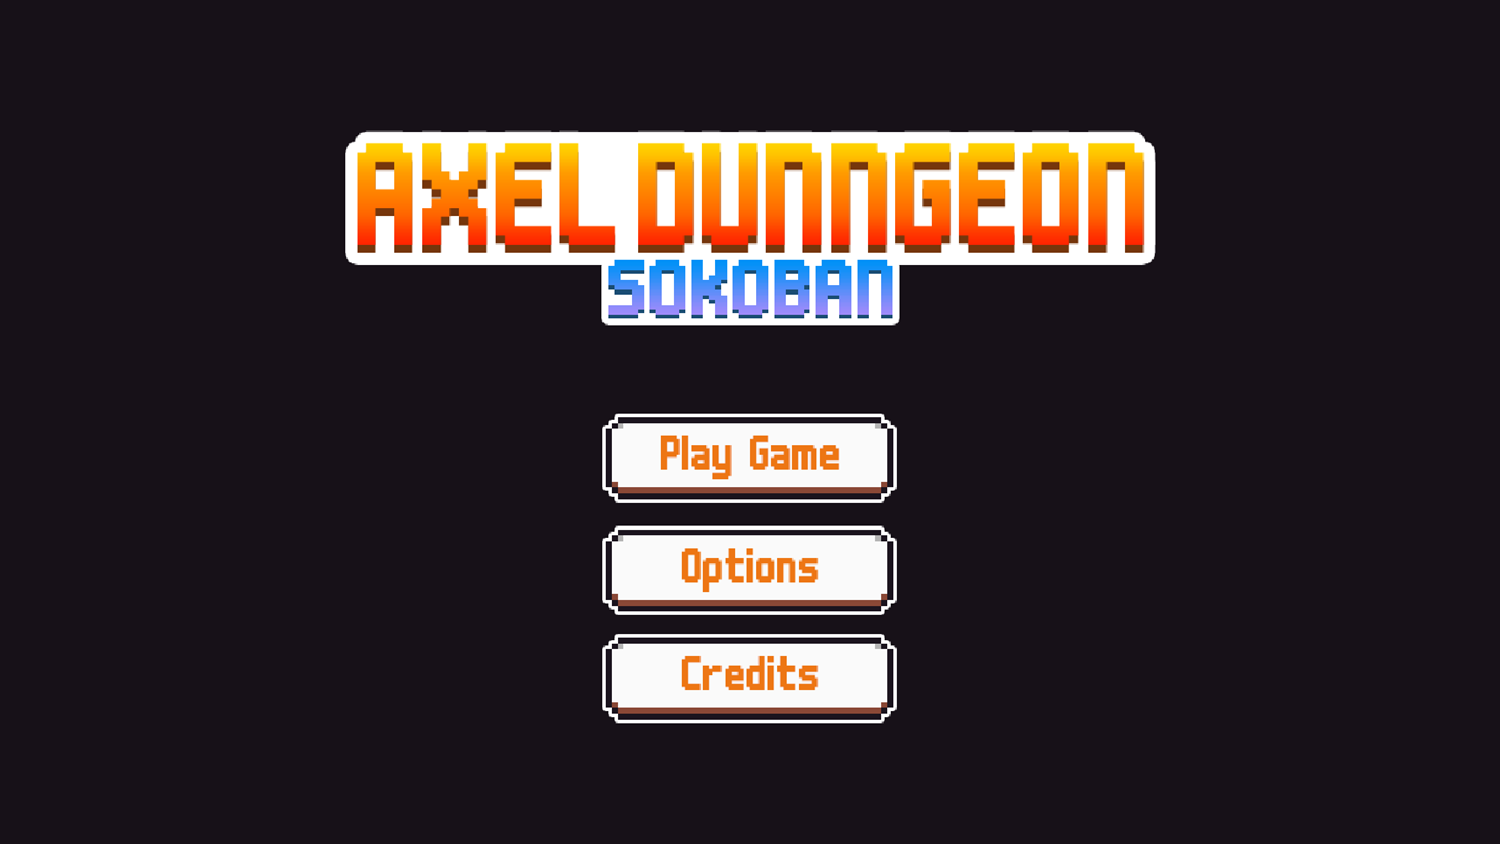 Axel Dungeon Sokoban Game Welcome Screen Screenshot.